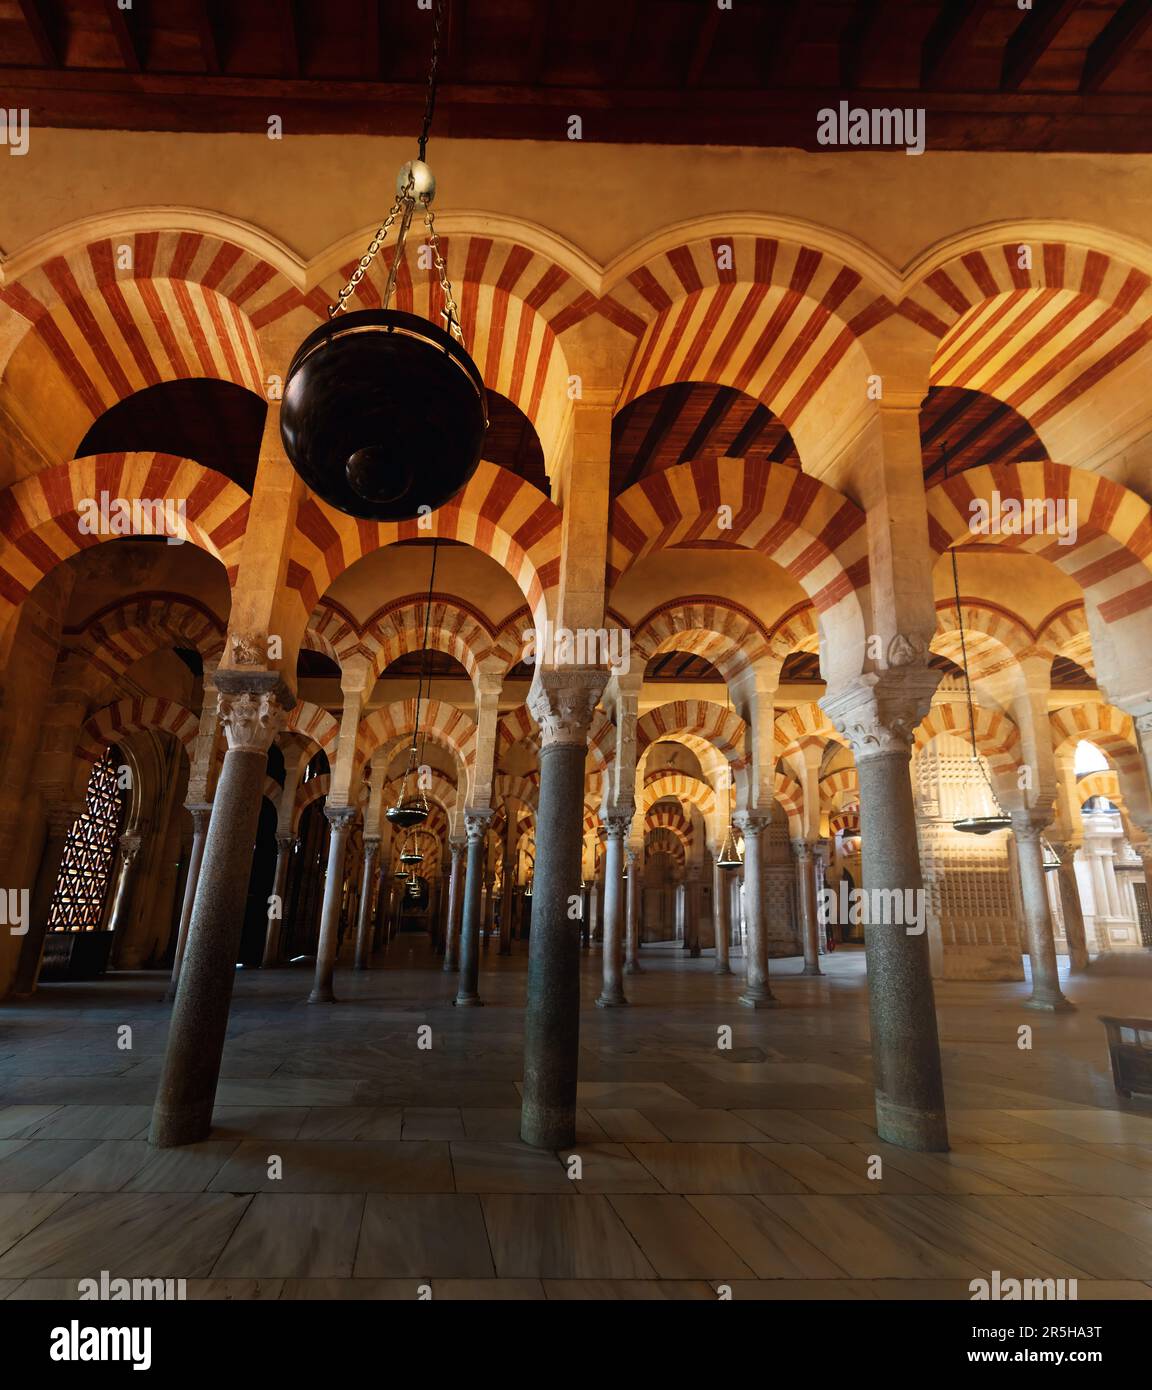 Bögen und Säulen der hypostilvollen Gebetshalle in der Moschee-Kathedrale von Cordoba (Erweiterung Abd ar-Rahman II) - Cordoba, Andalusien, Spanien Stockfoto